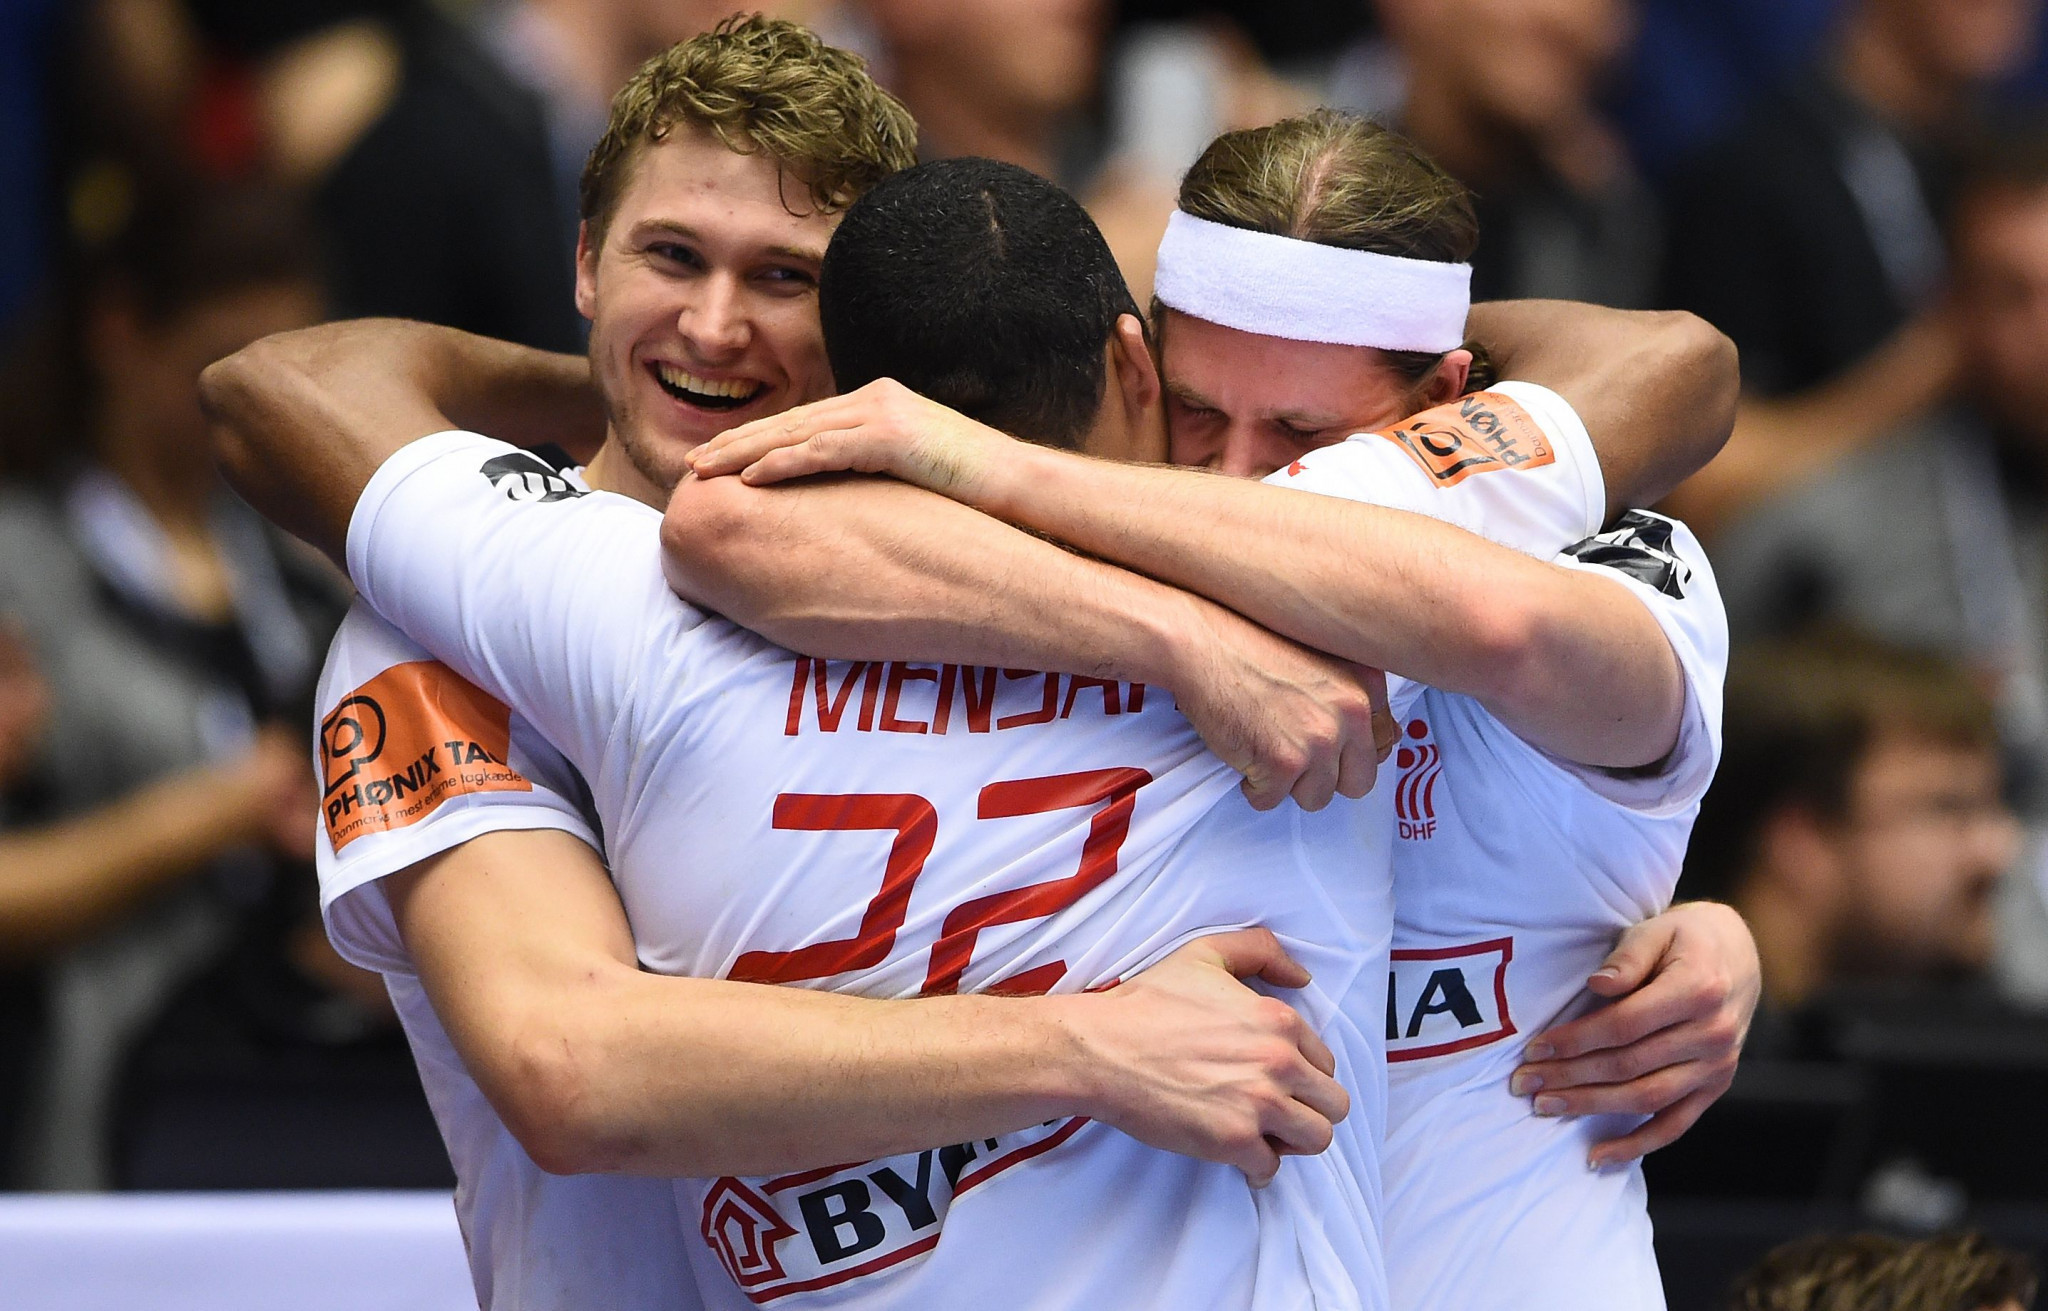 Denmark won the men's handball world title on home soil ©Getty Images